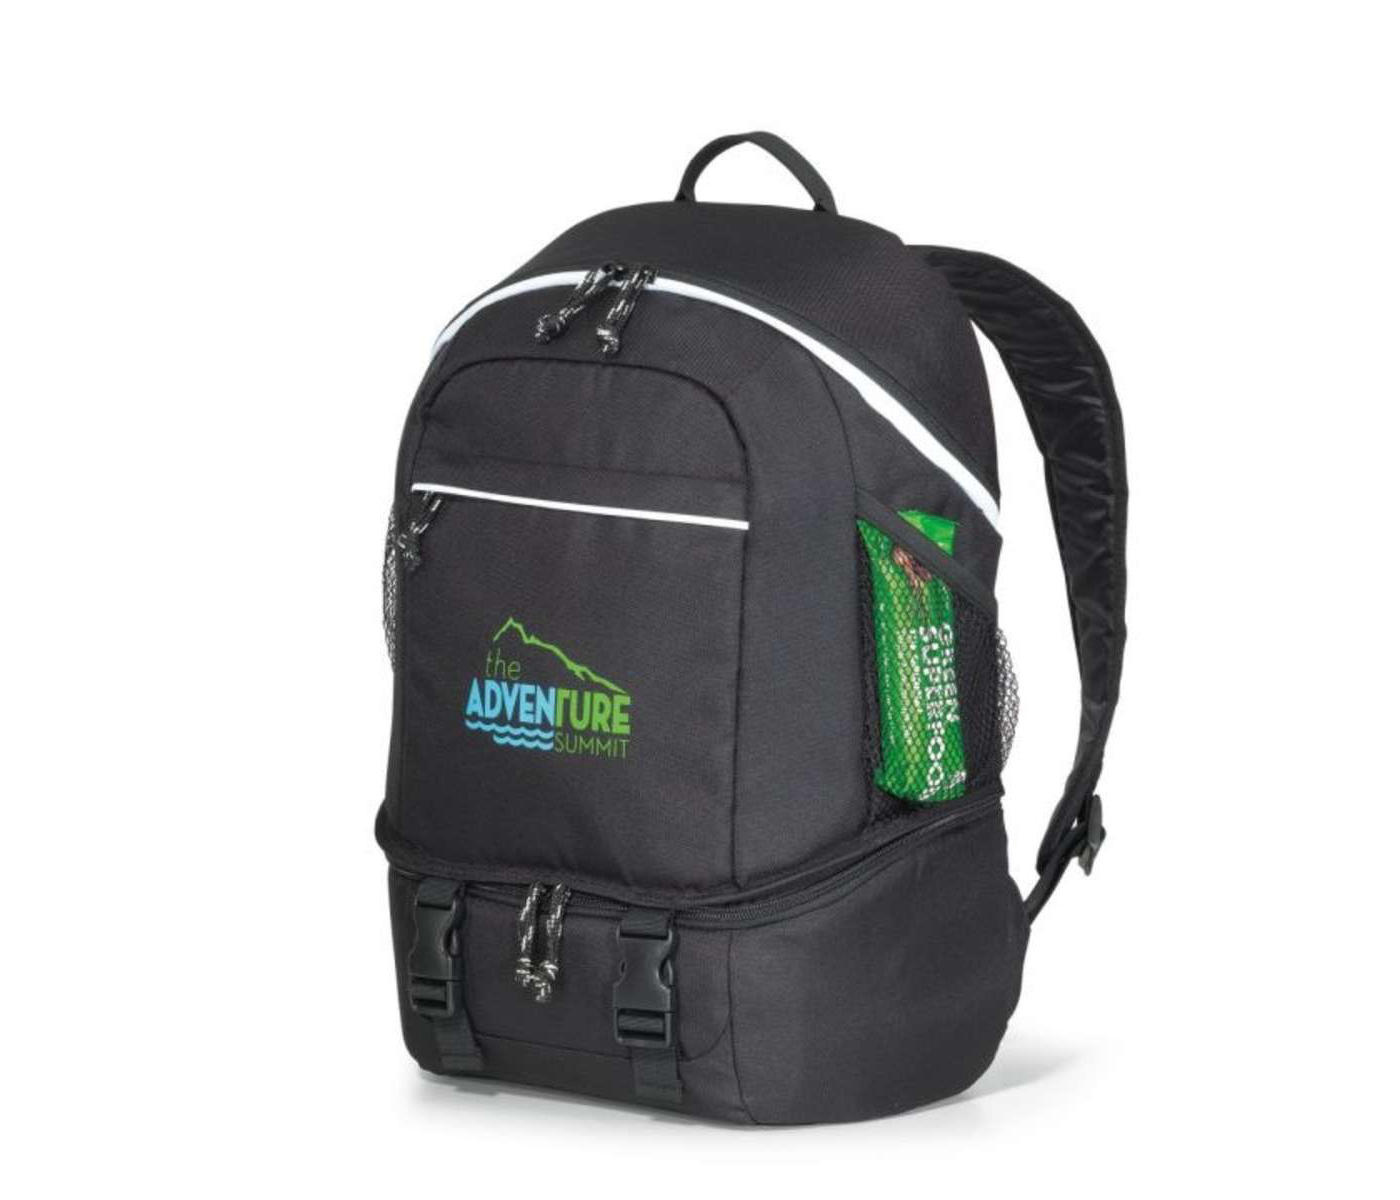 Summit Backpack Cooler - Black